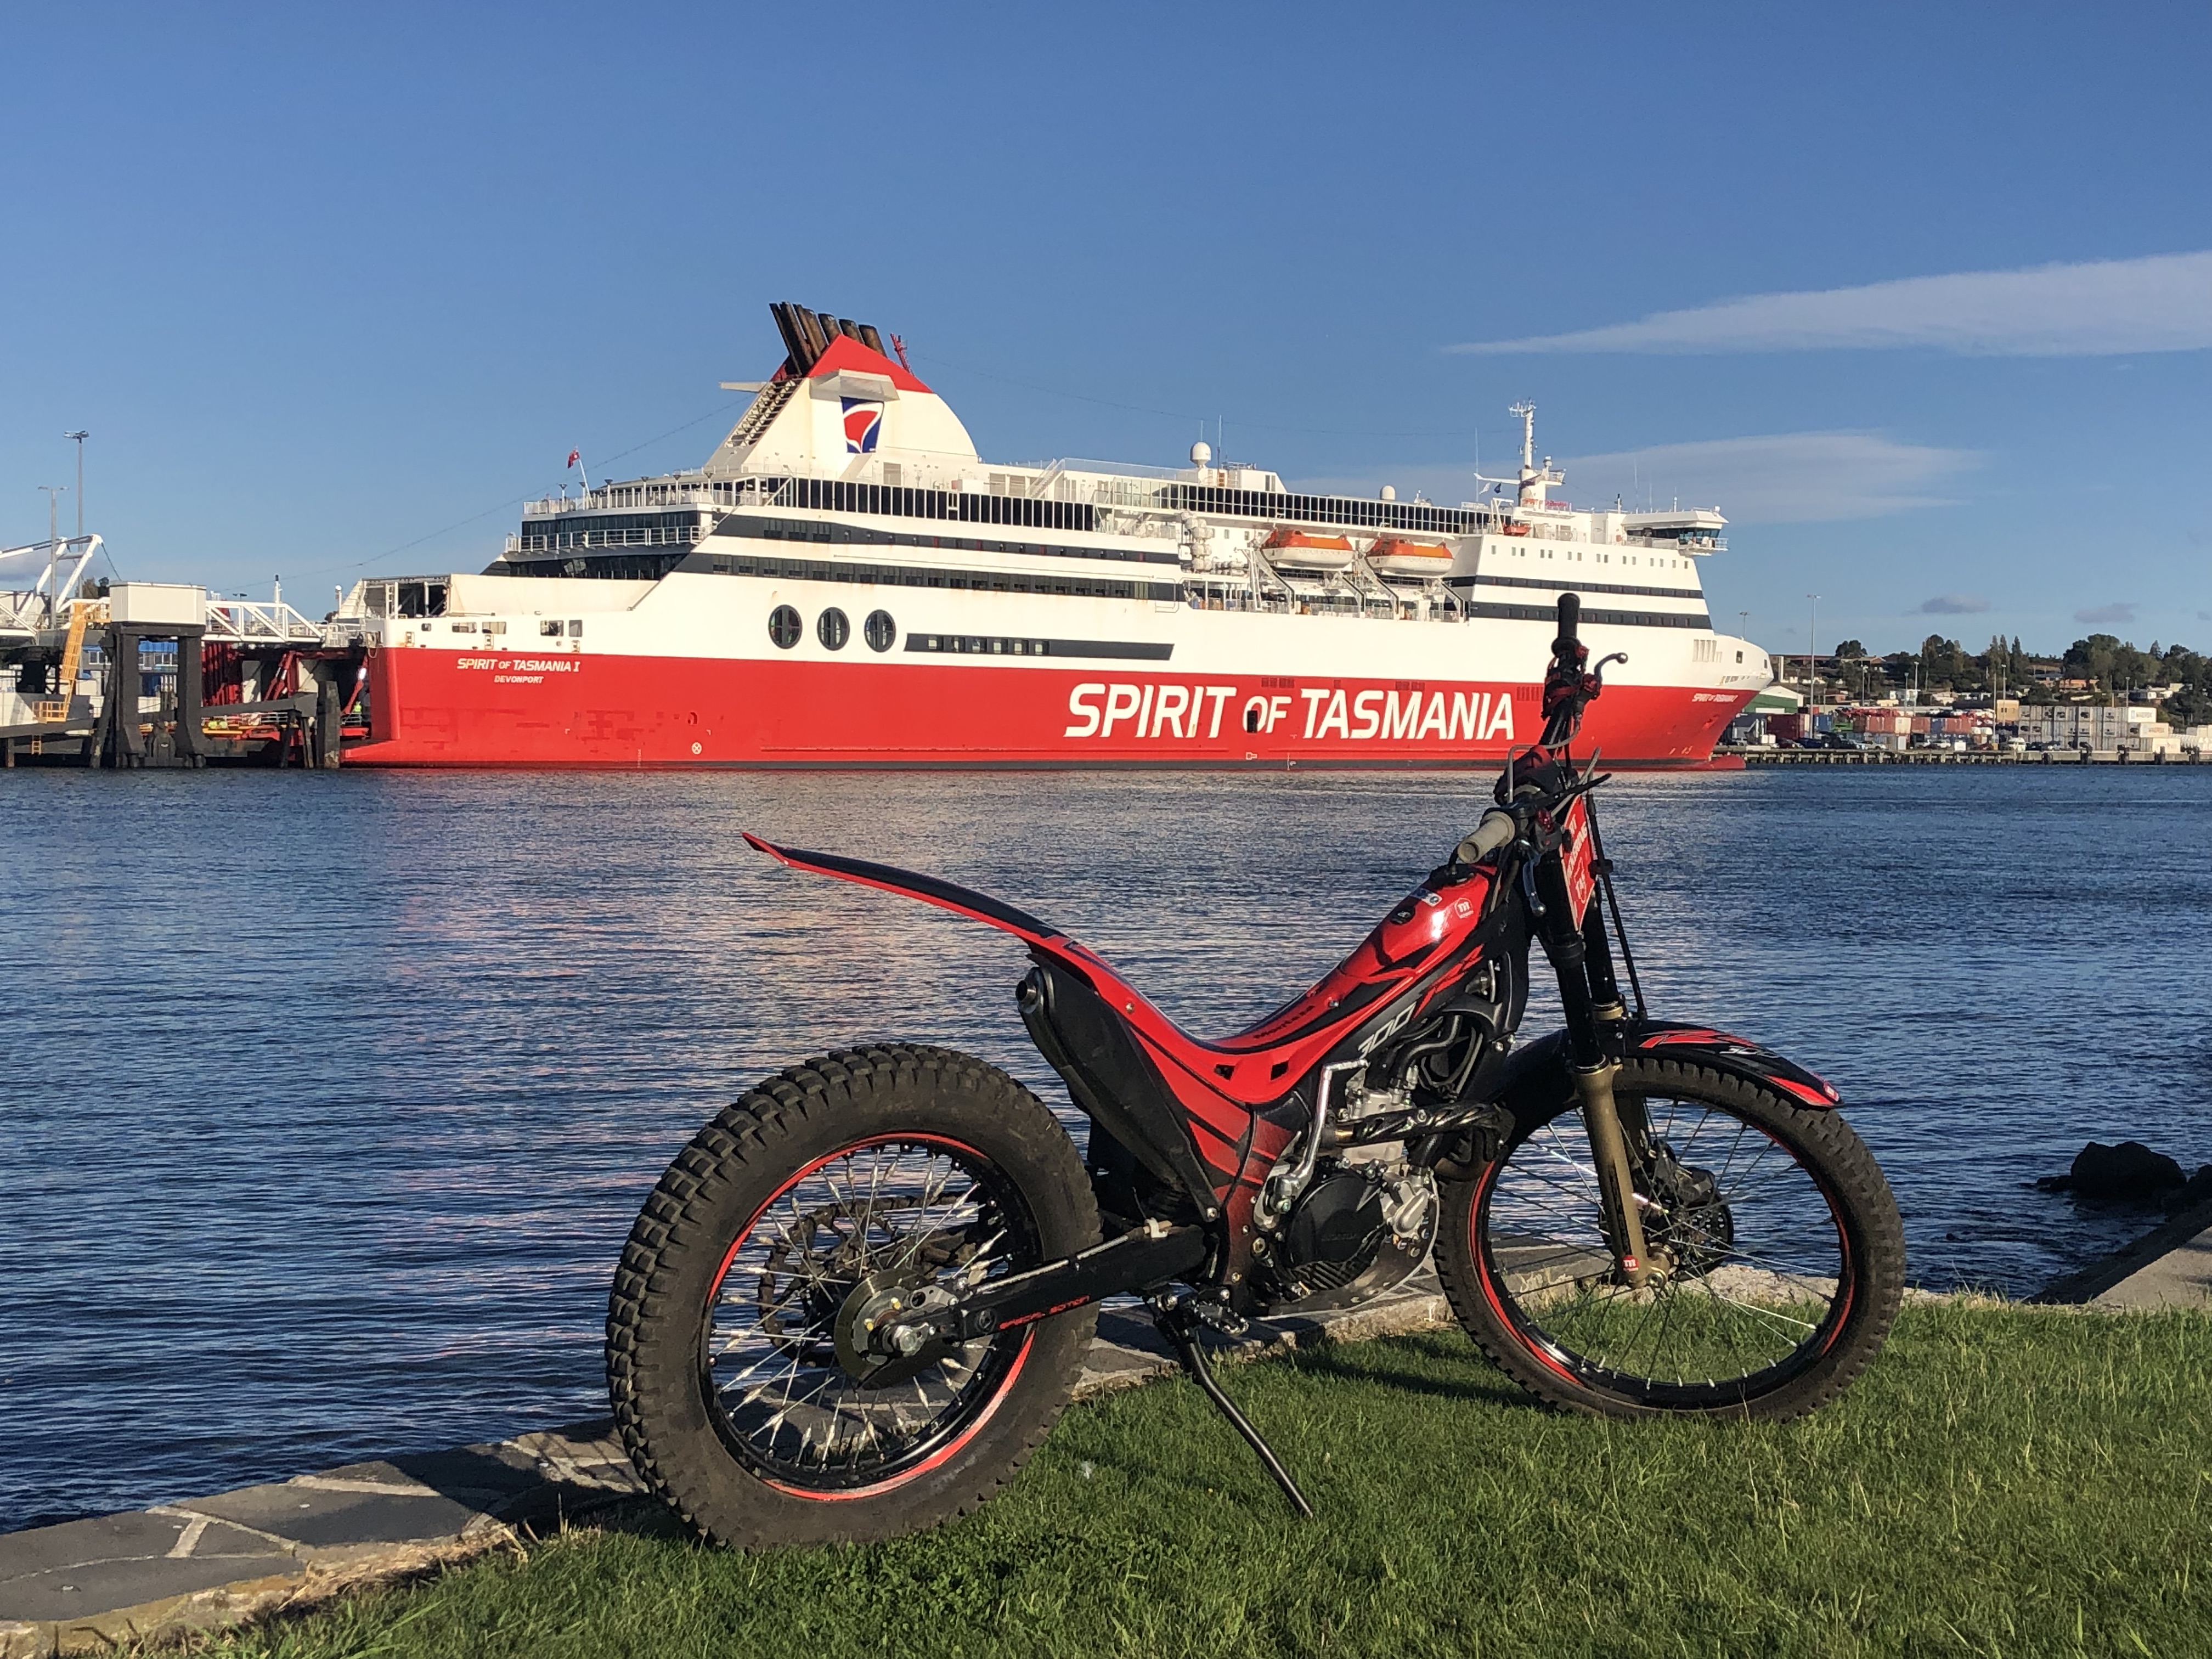 2019 Huon Aquaculture Australian Moto Trials Championship - Travel Arrangements